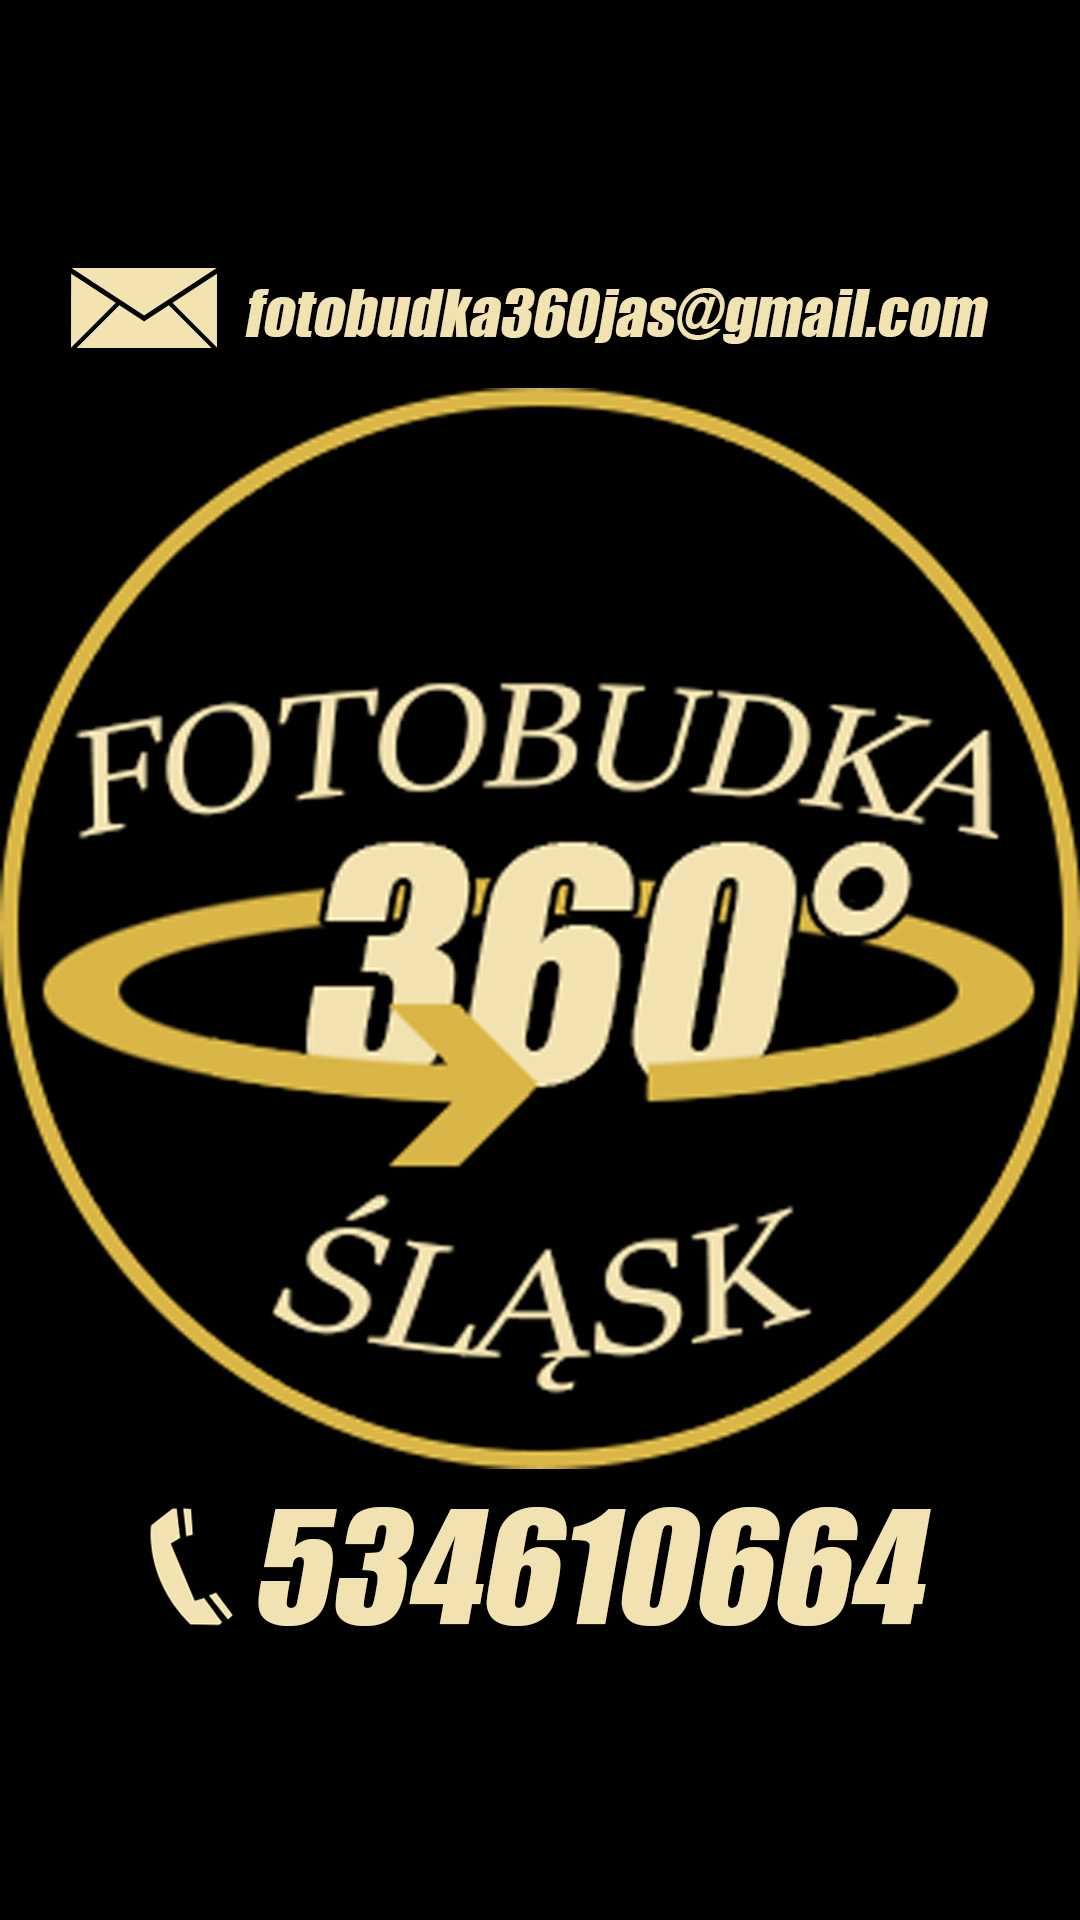 FOTOBUDKA 360 na twoją imprezę! Wesele/Studniówka/18nastka